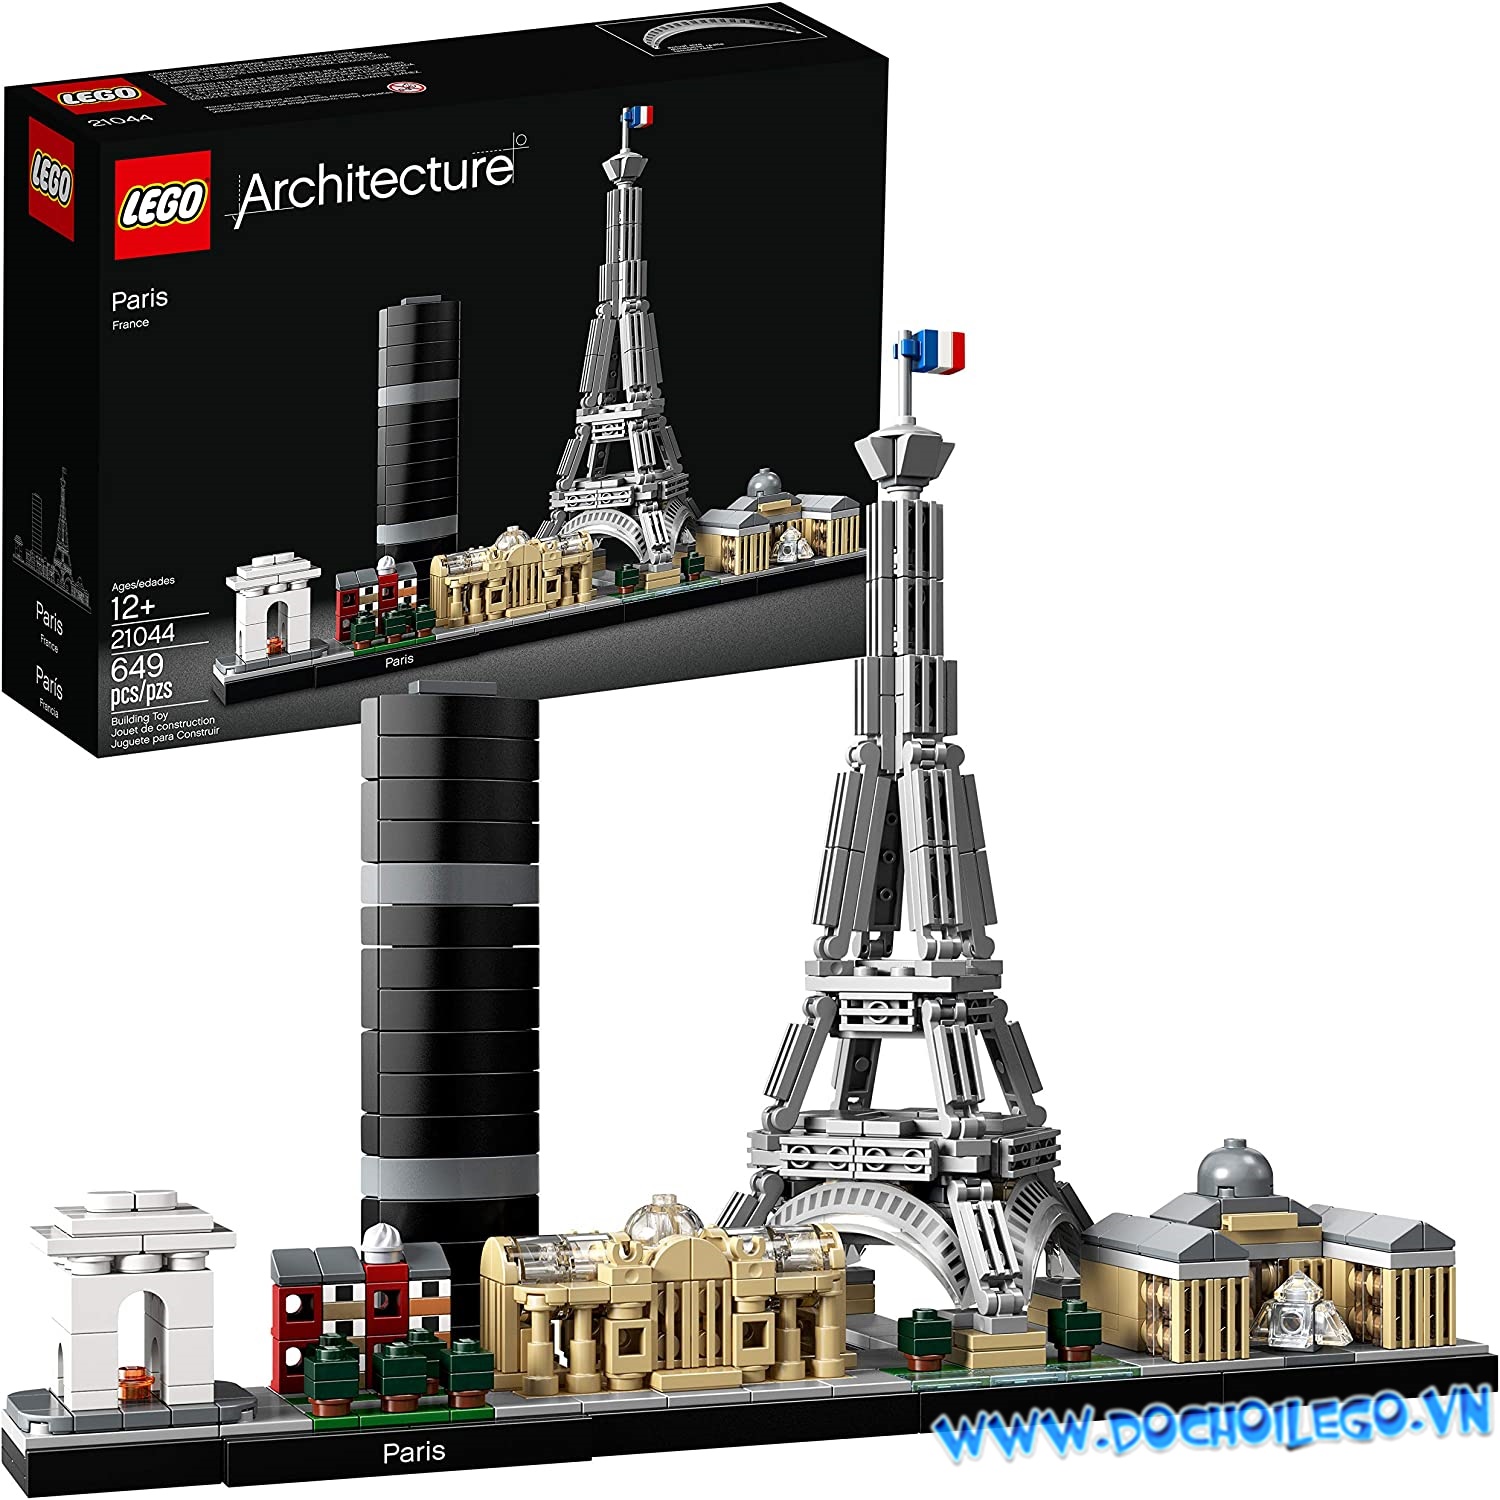 21044 LEGO Architecture Skylines PARIS - Kiến trúc Pháp